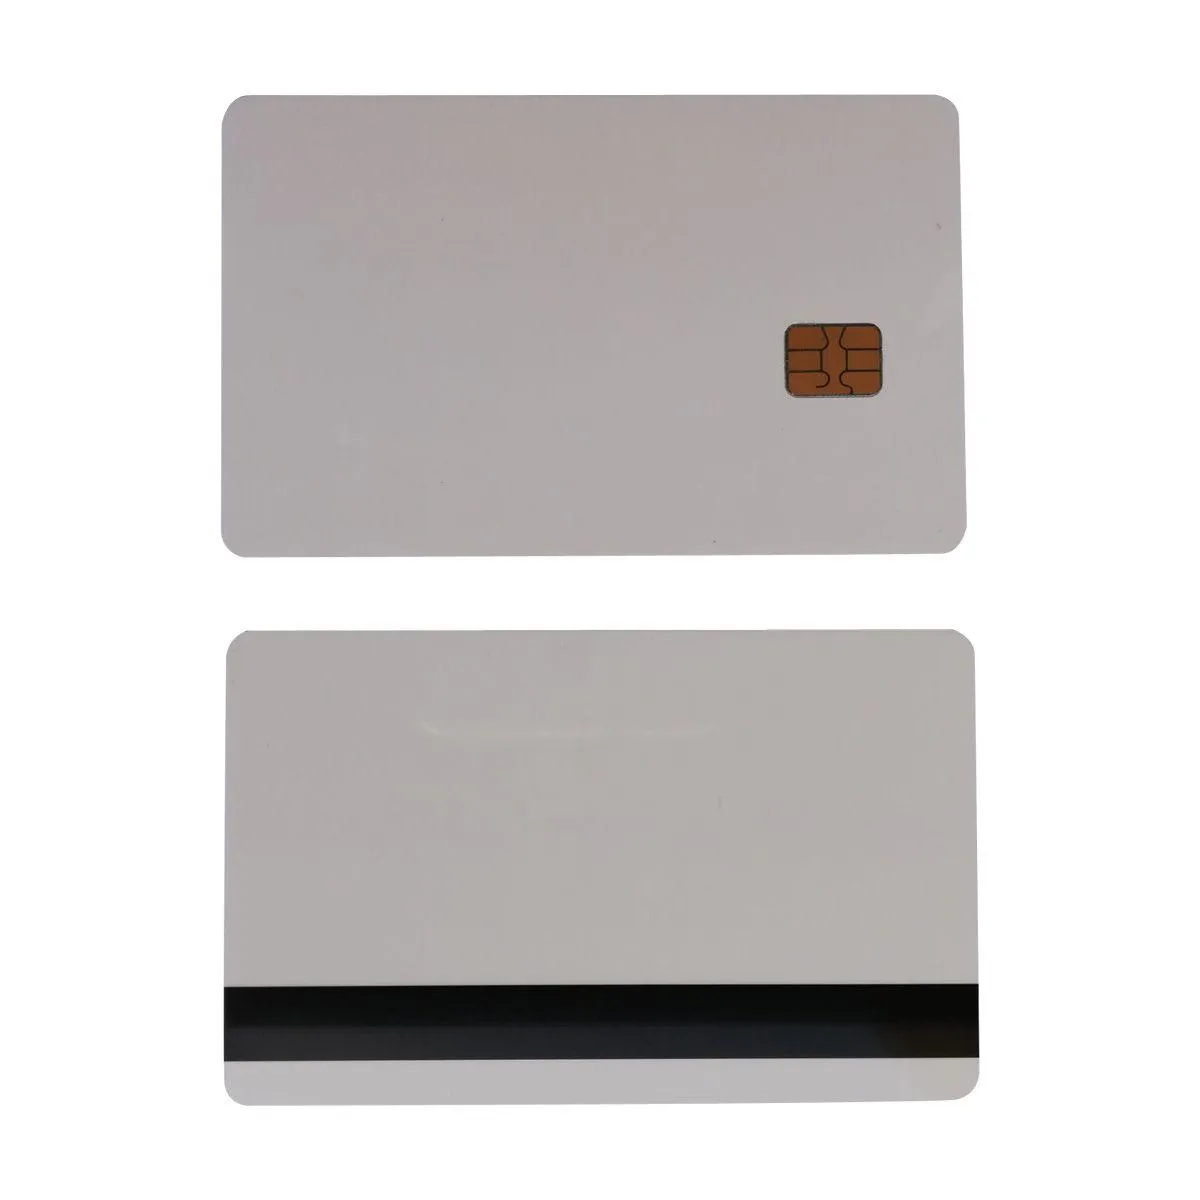 アクセス制御カード10pcsホワイトSLE4442連絡先チップPVCスマート8.4mm HICO磁気ストライプドロップ配信セキュリティサーベイランス